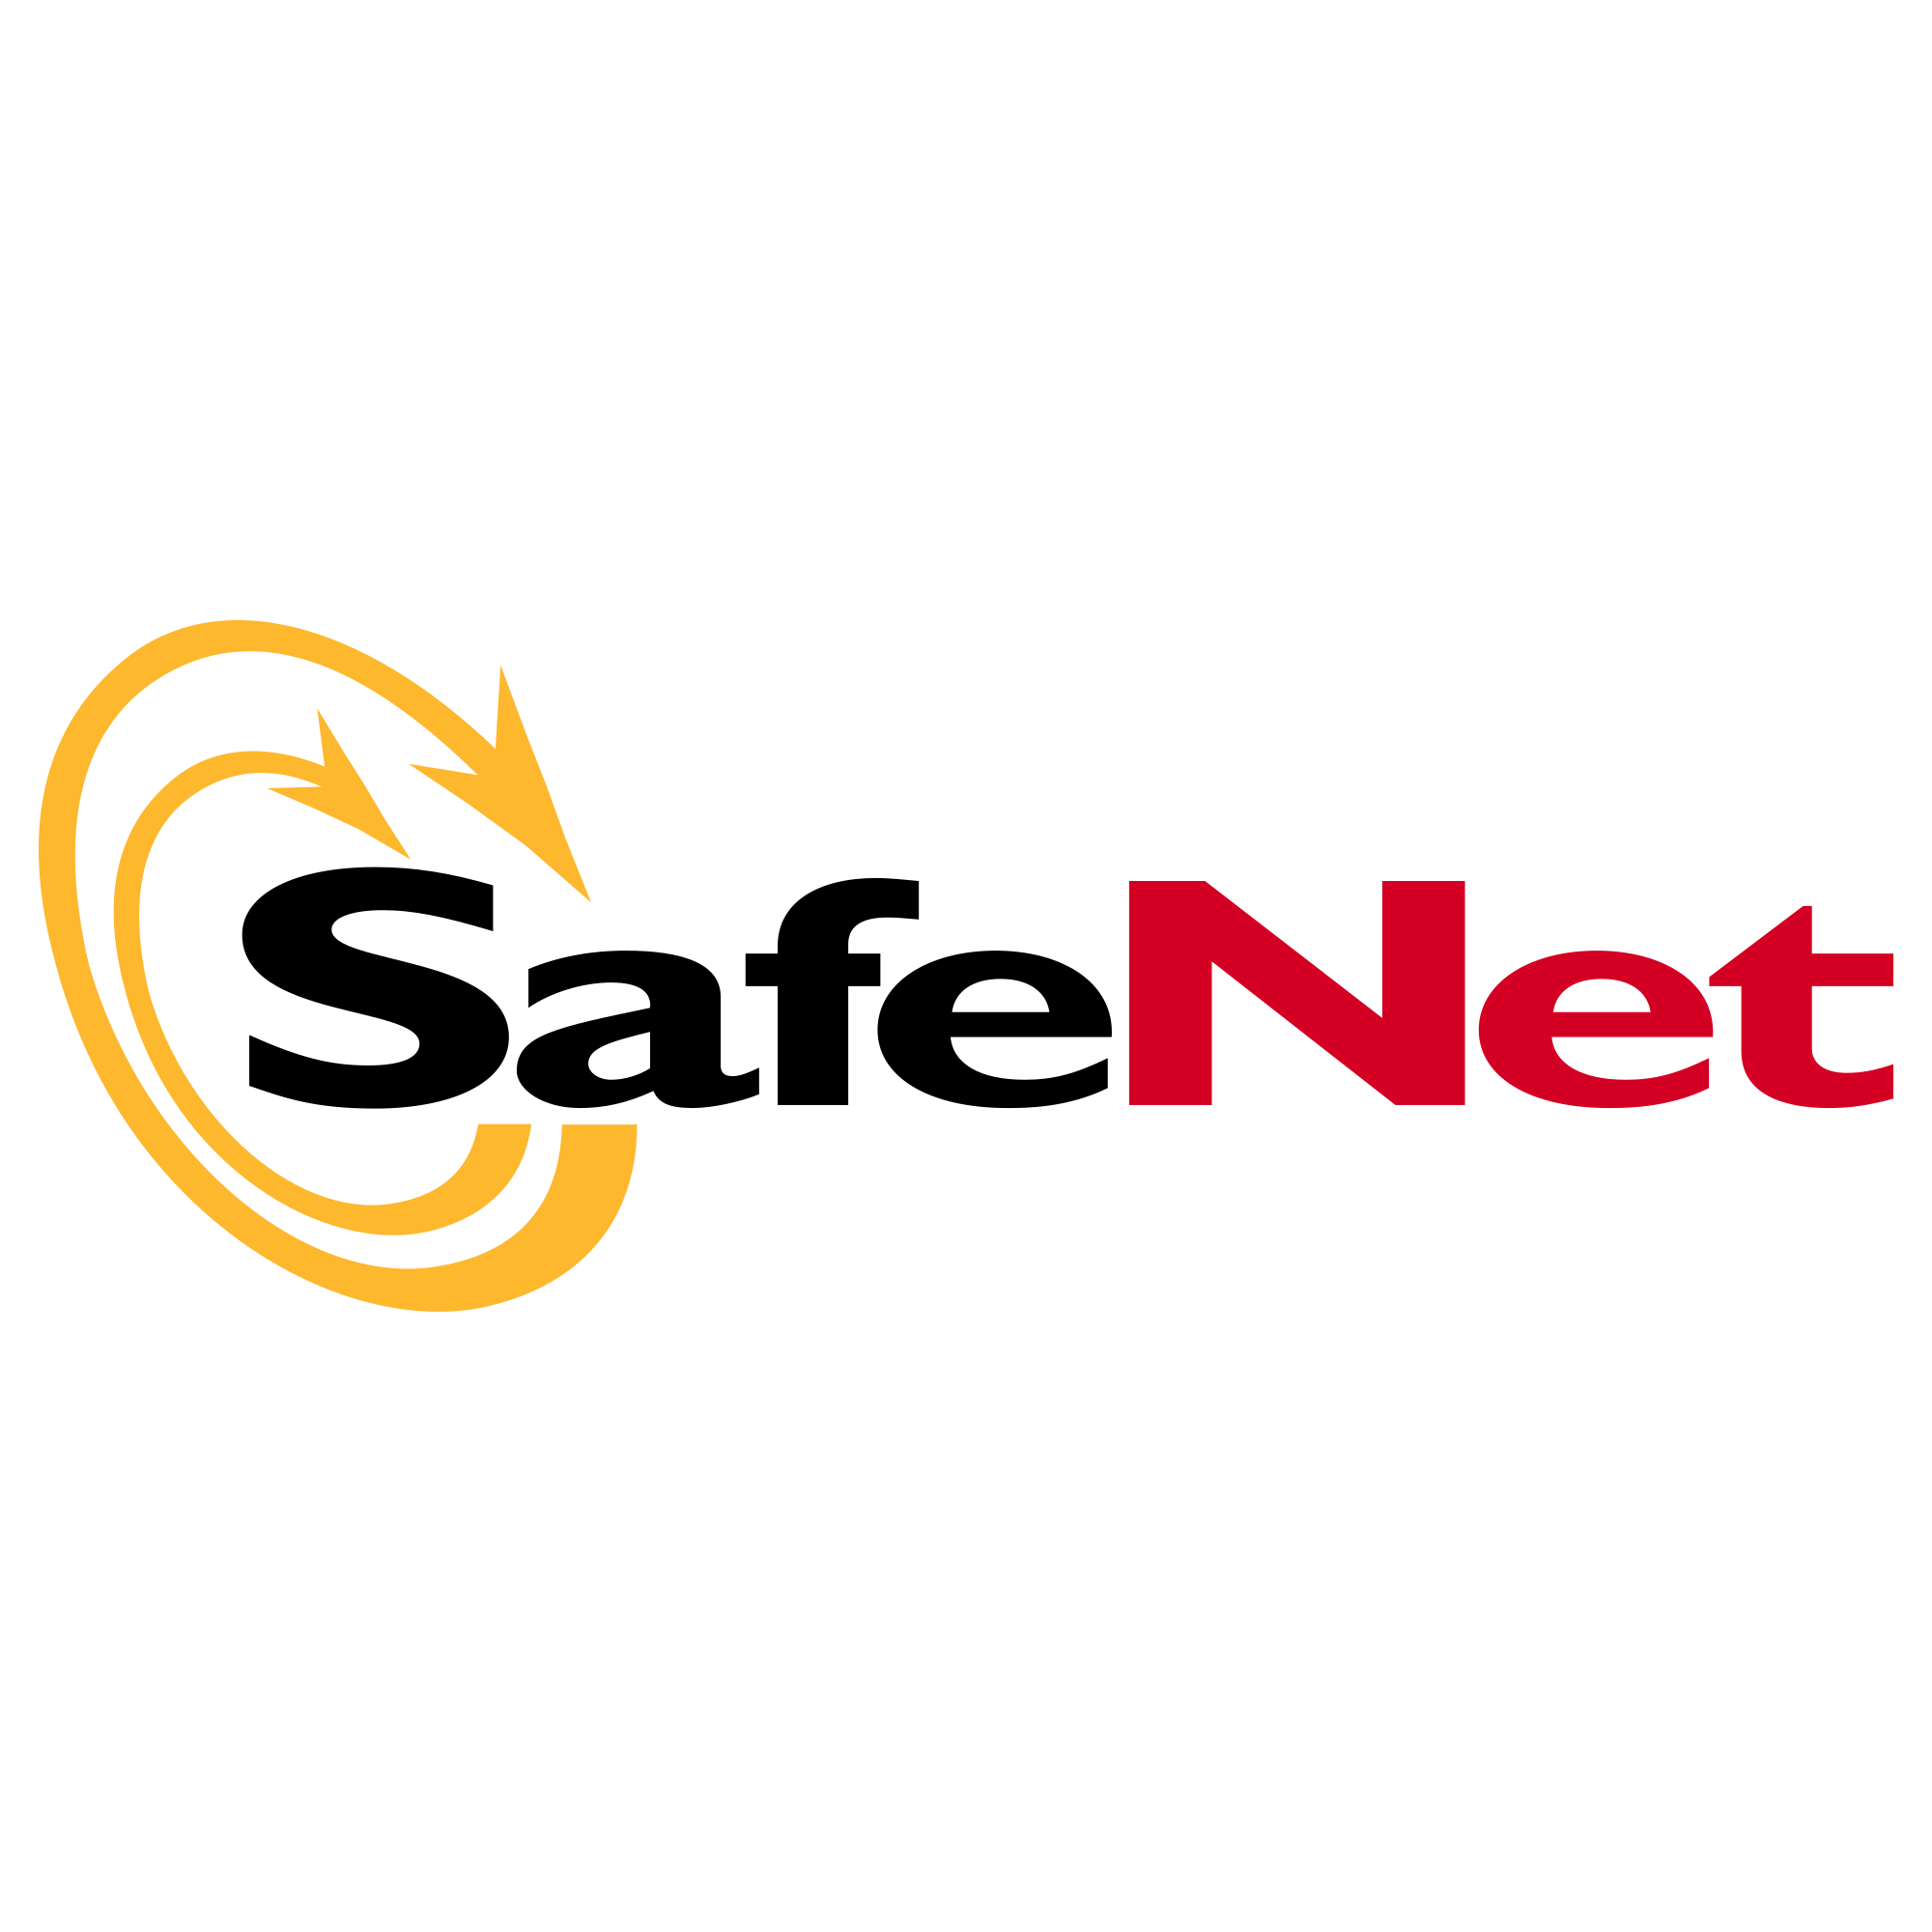 Safenet Logo Transparent Image